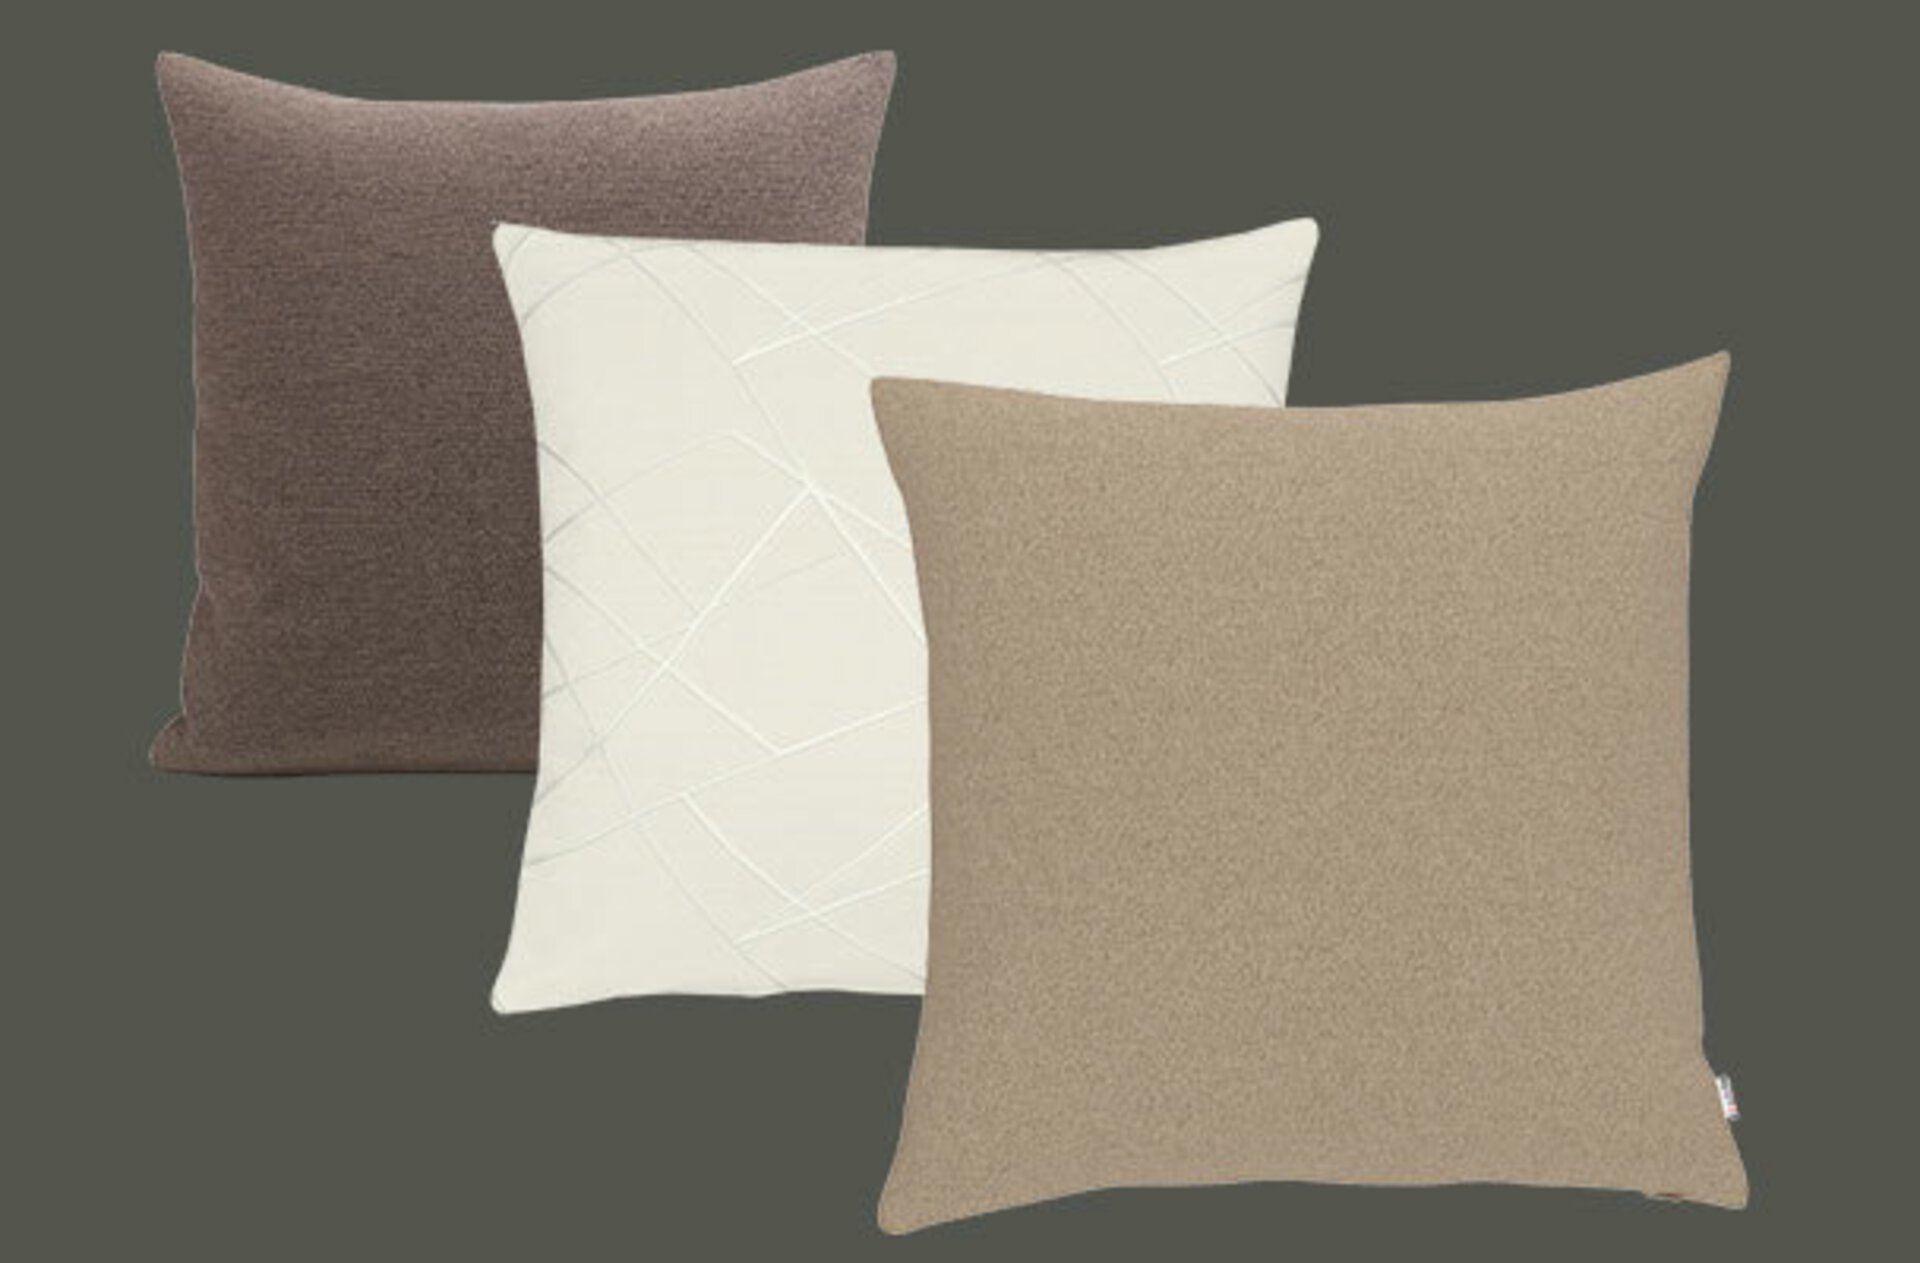 Drei Kissen hintereinander gereiht in verschiedenen Farben (braun, beige und hell braun))